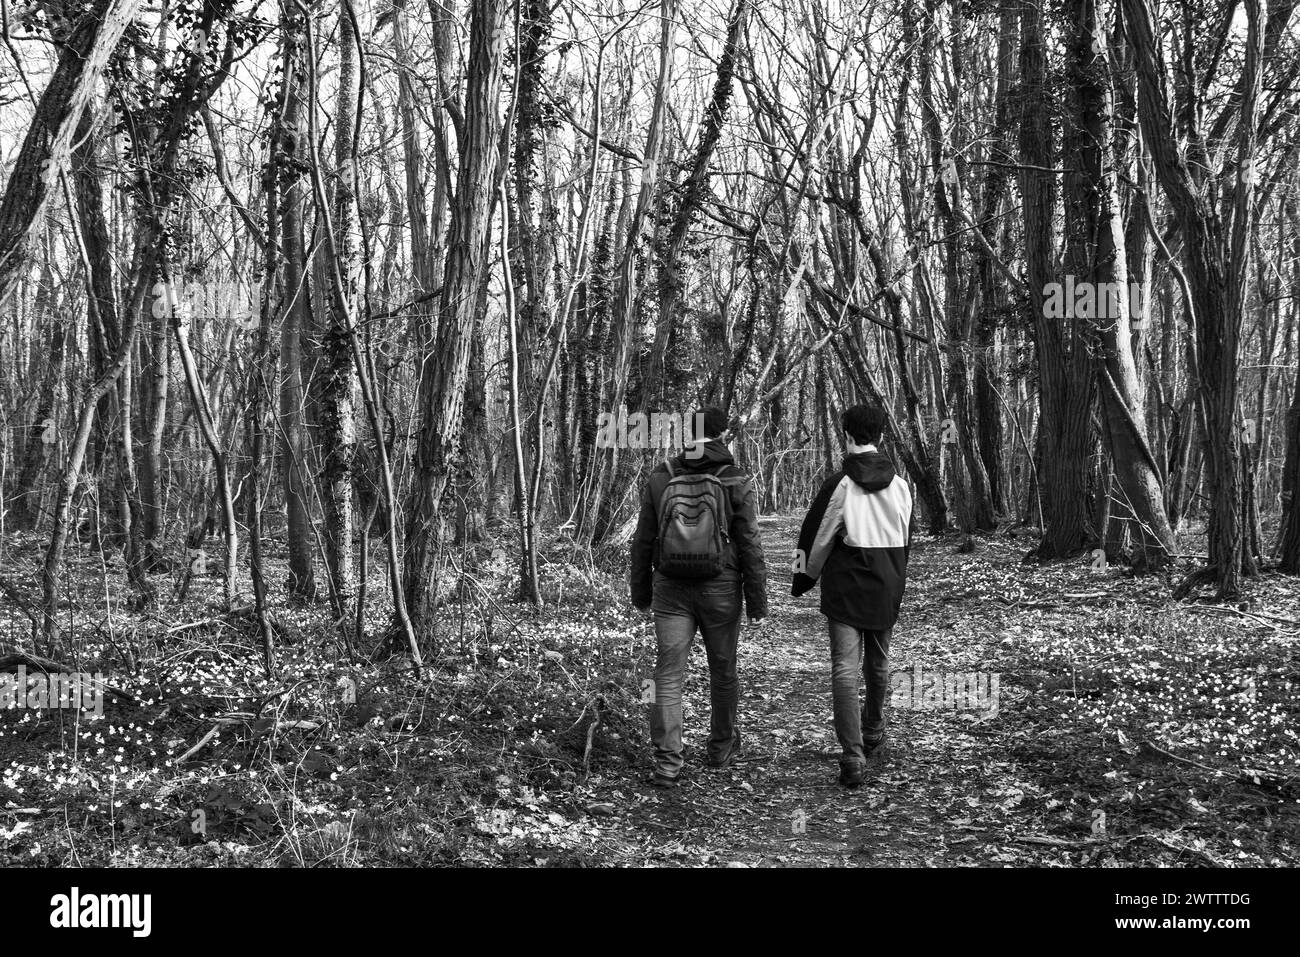 Vater und heranwachsender Sohn gehen im Wald, der mit wilden Holzanemonenblüten (Anemonoides nemorosa) bedeckt ist. Ile-de-France, Frankreich. Schwarzweißfoto. Stockfoto